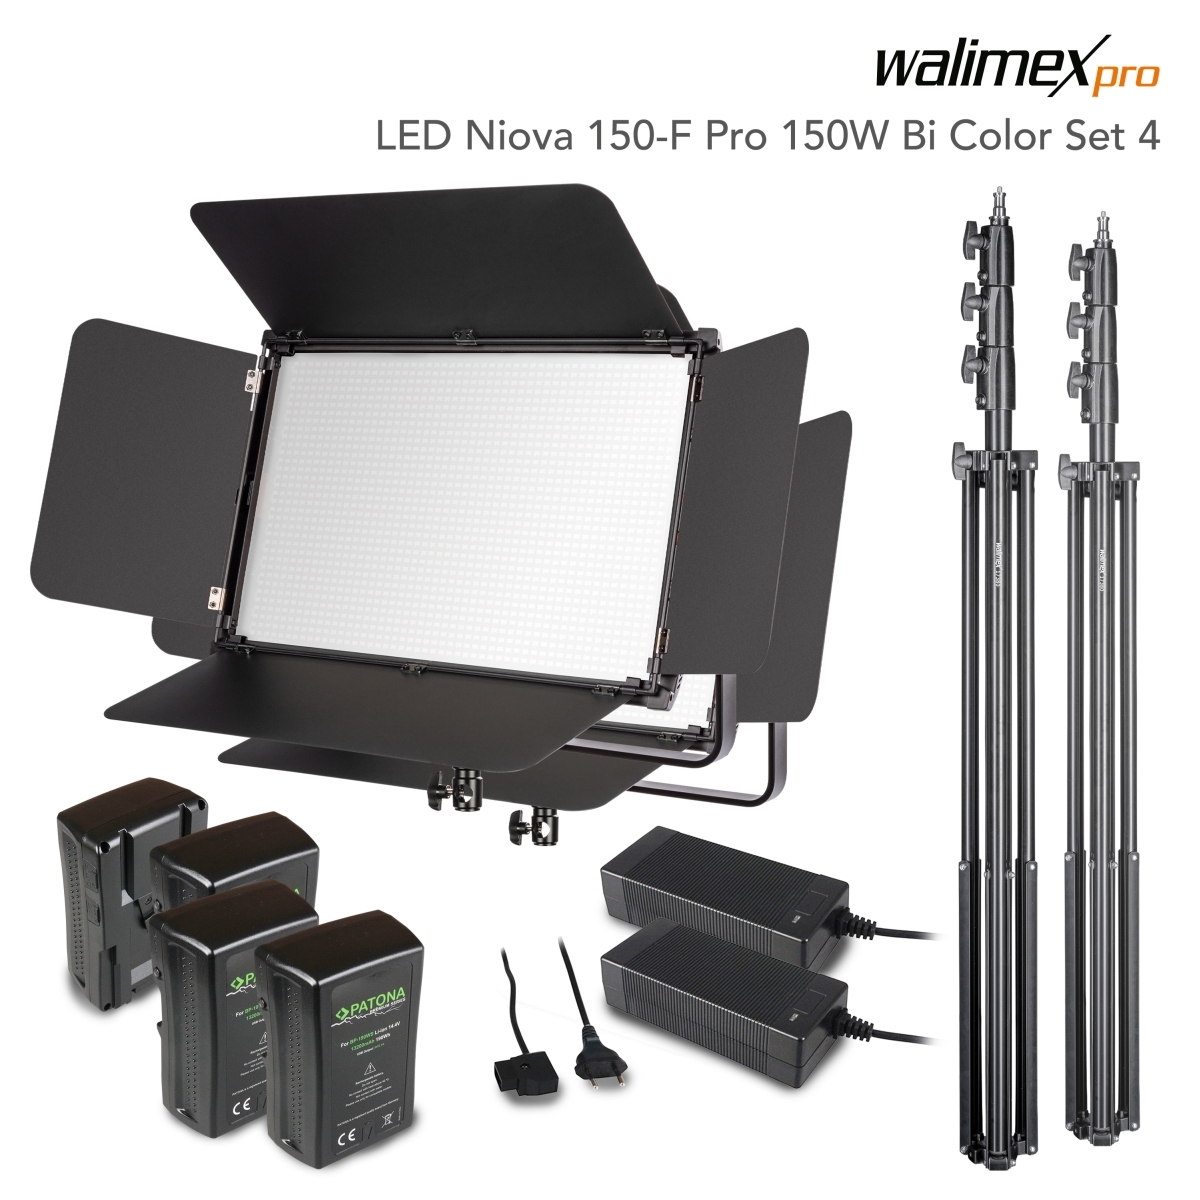 Walimex pro LED Niova 150-F Pro 150W Bi Color Set4